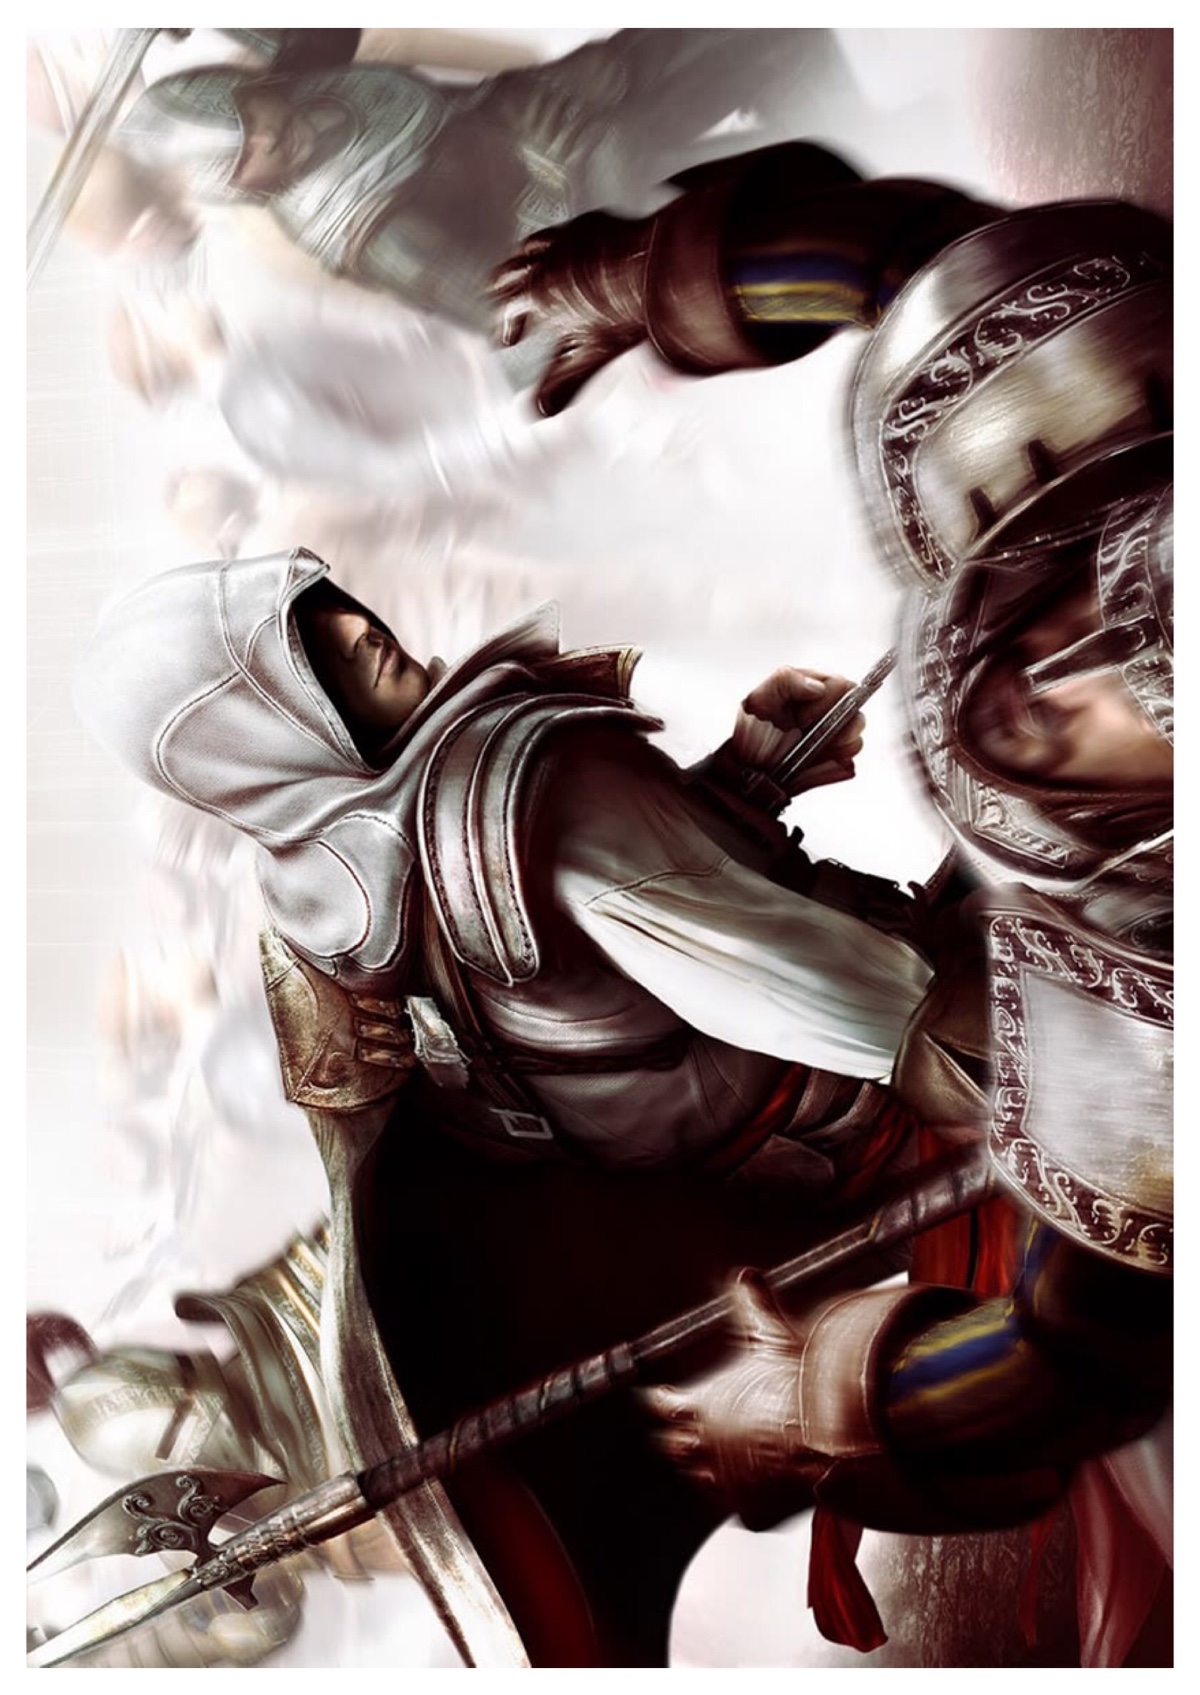 艾吉奥逐渐蜕变为成熟坚毅的刺客,勇敢地踏上了与圣殿骑士战斗,夺取